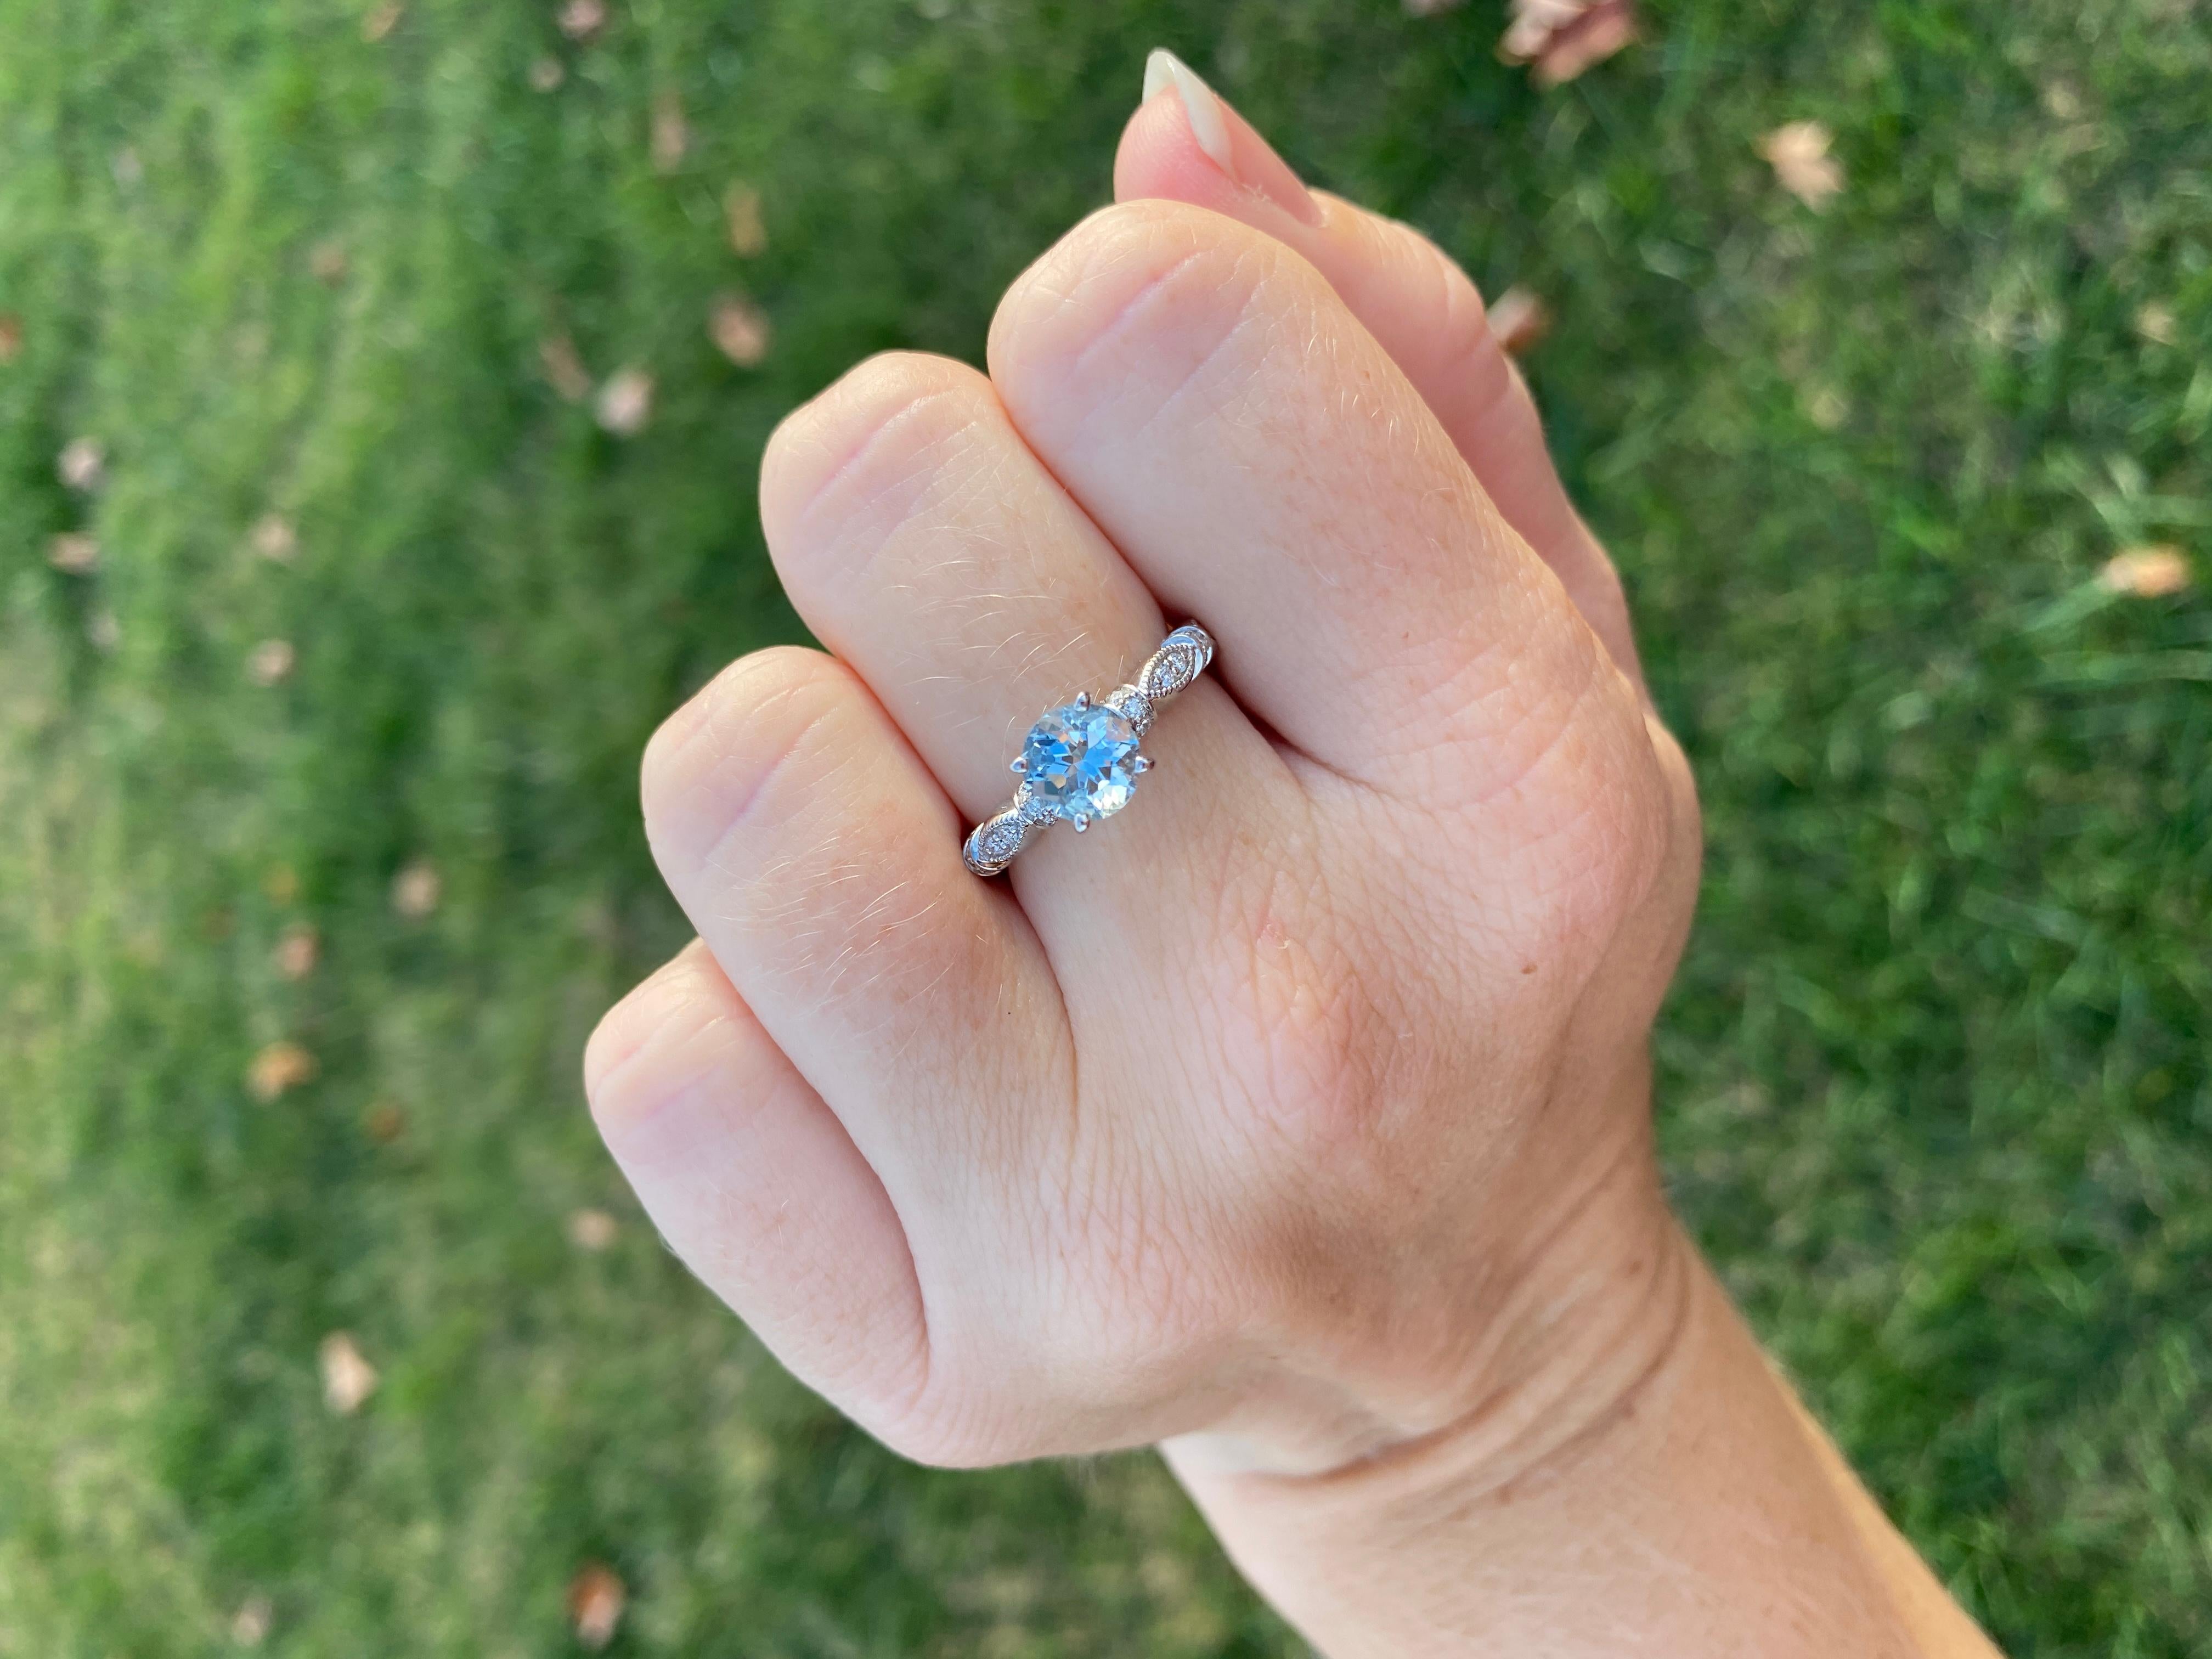 Aquamarine Diamond Engagement Ring, 14K White Gold, Ring Size 7.25 2